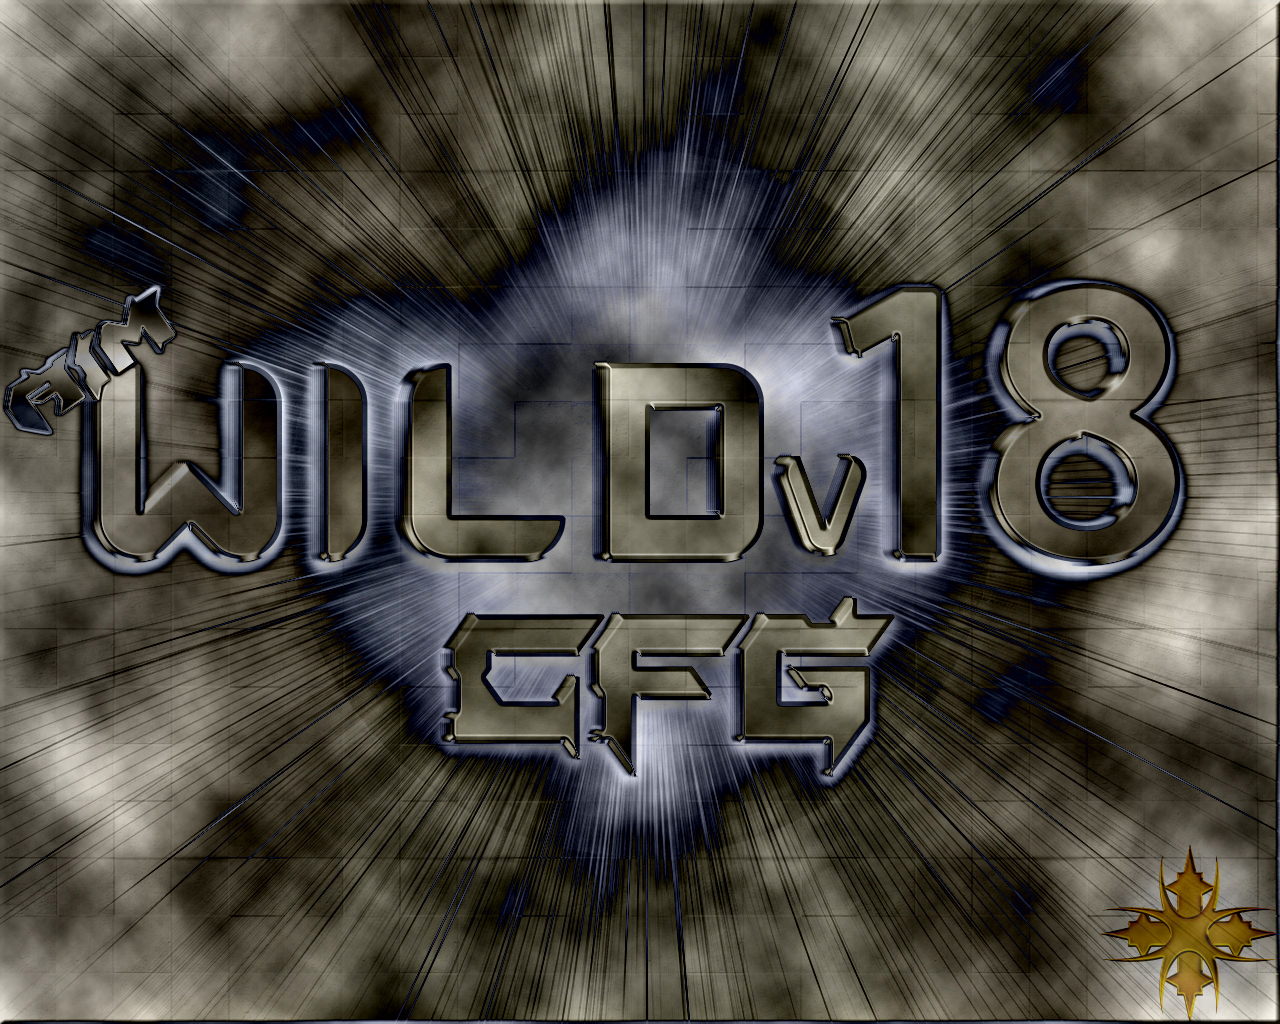  [AIM] WILDv18 CFG # Farkı Hissetmeye Hazır Mısın ?